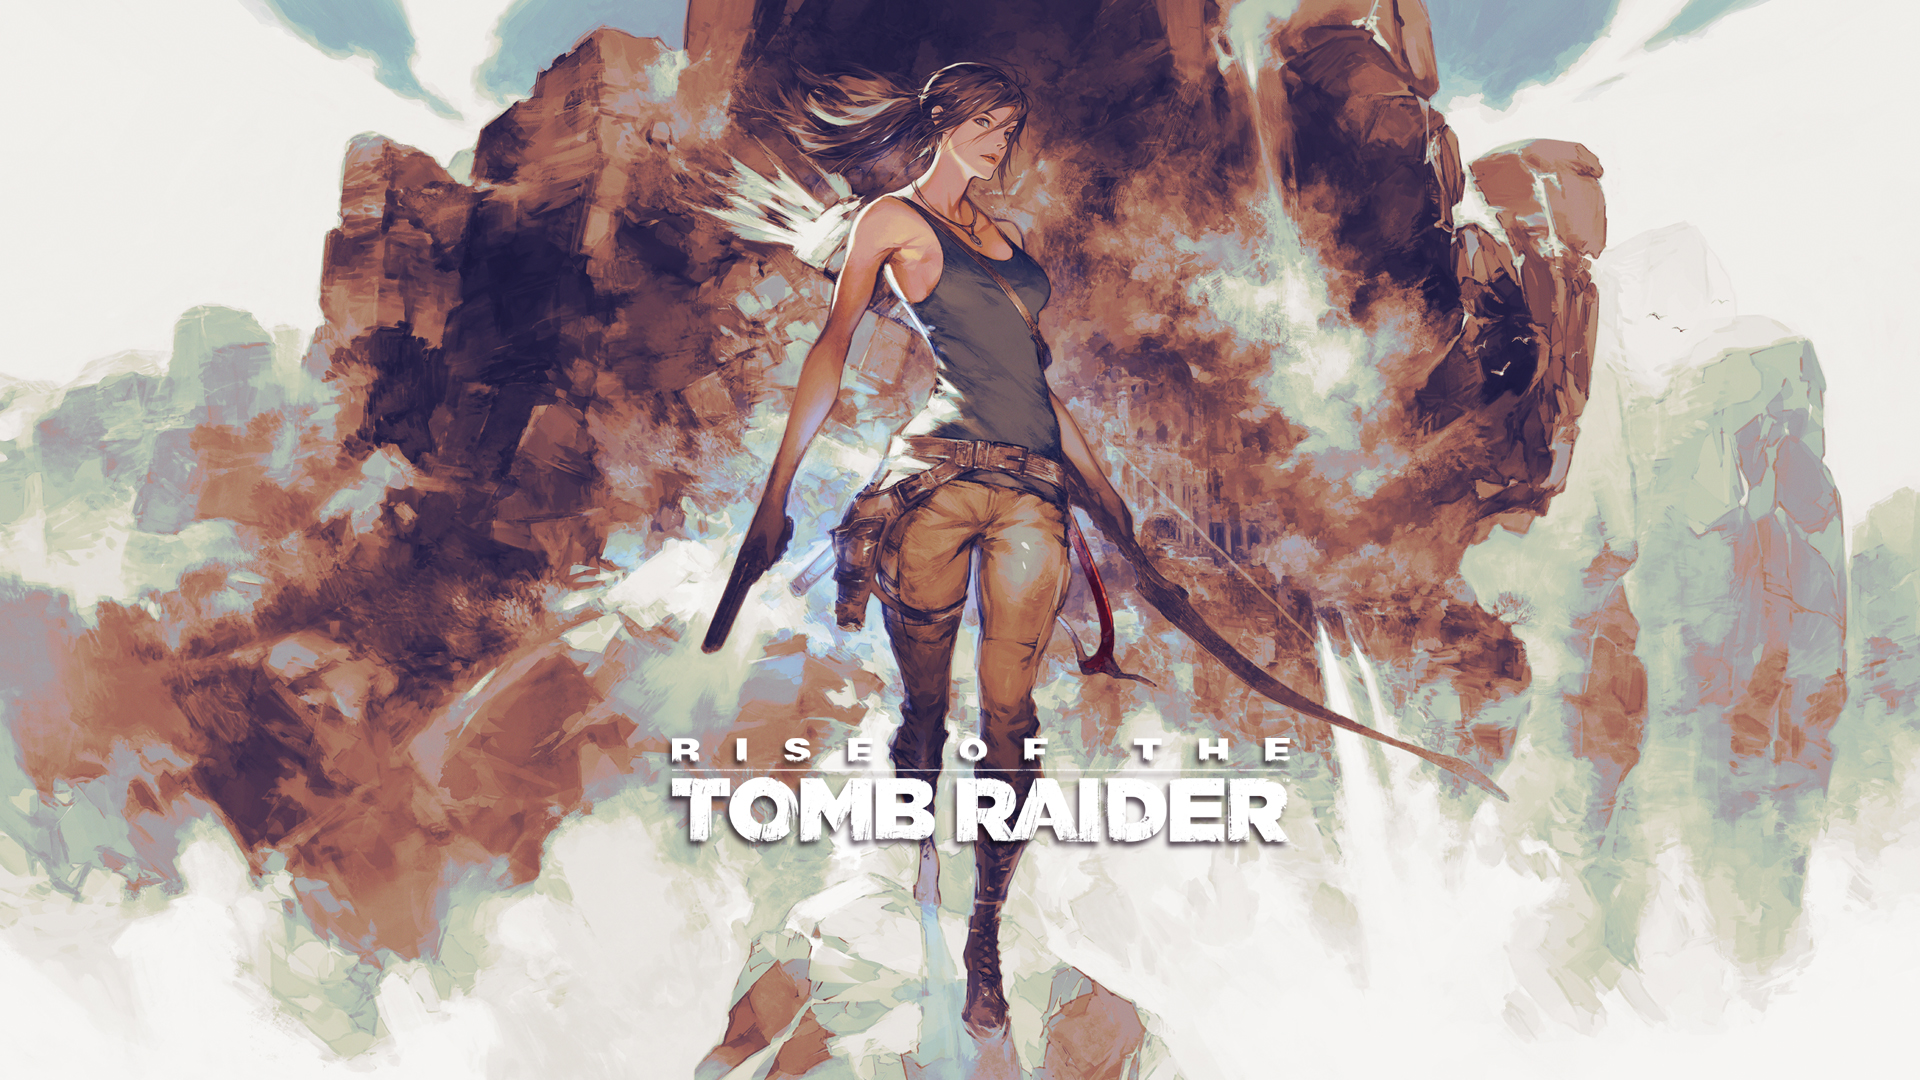 Reimagined Rise of the Tomb Raider box art by Akihiko Yoshida